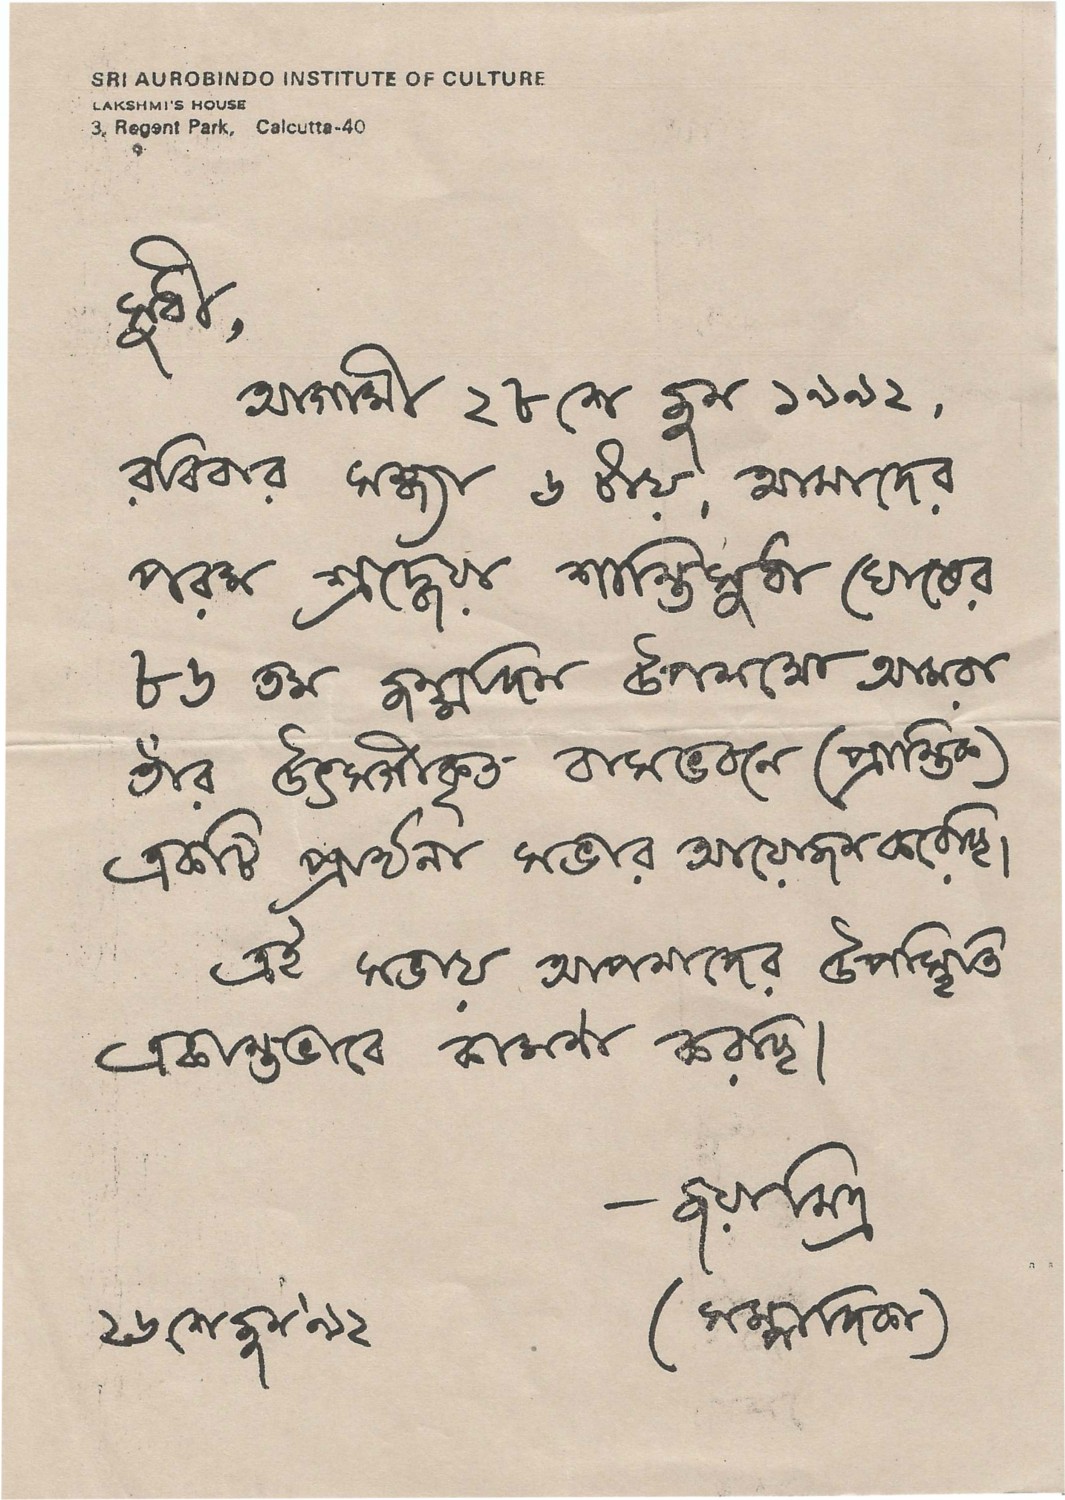 Joyadi- hand written invitation